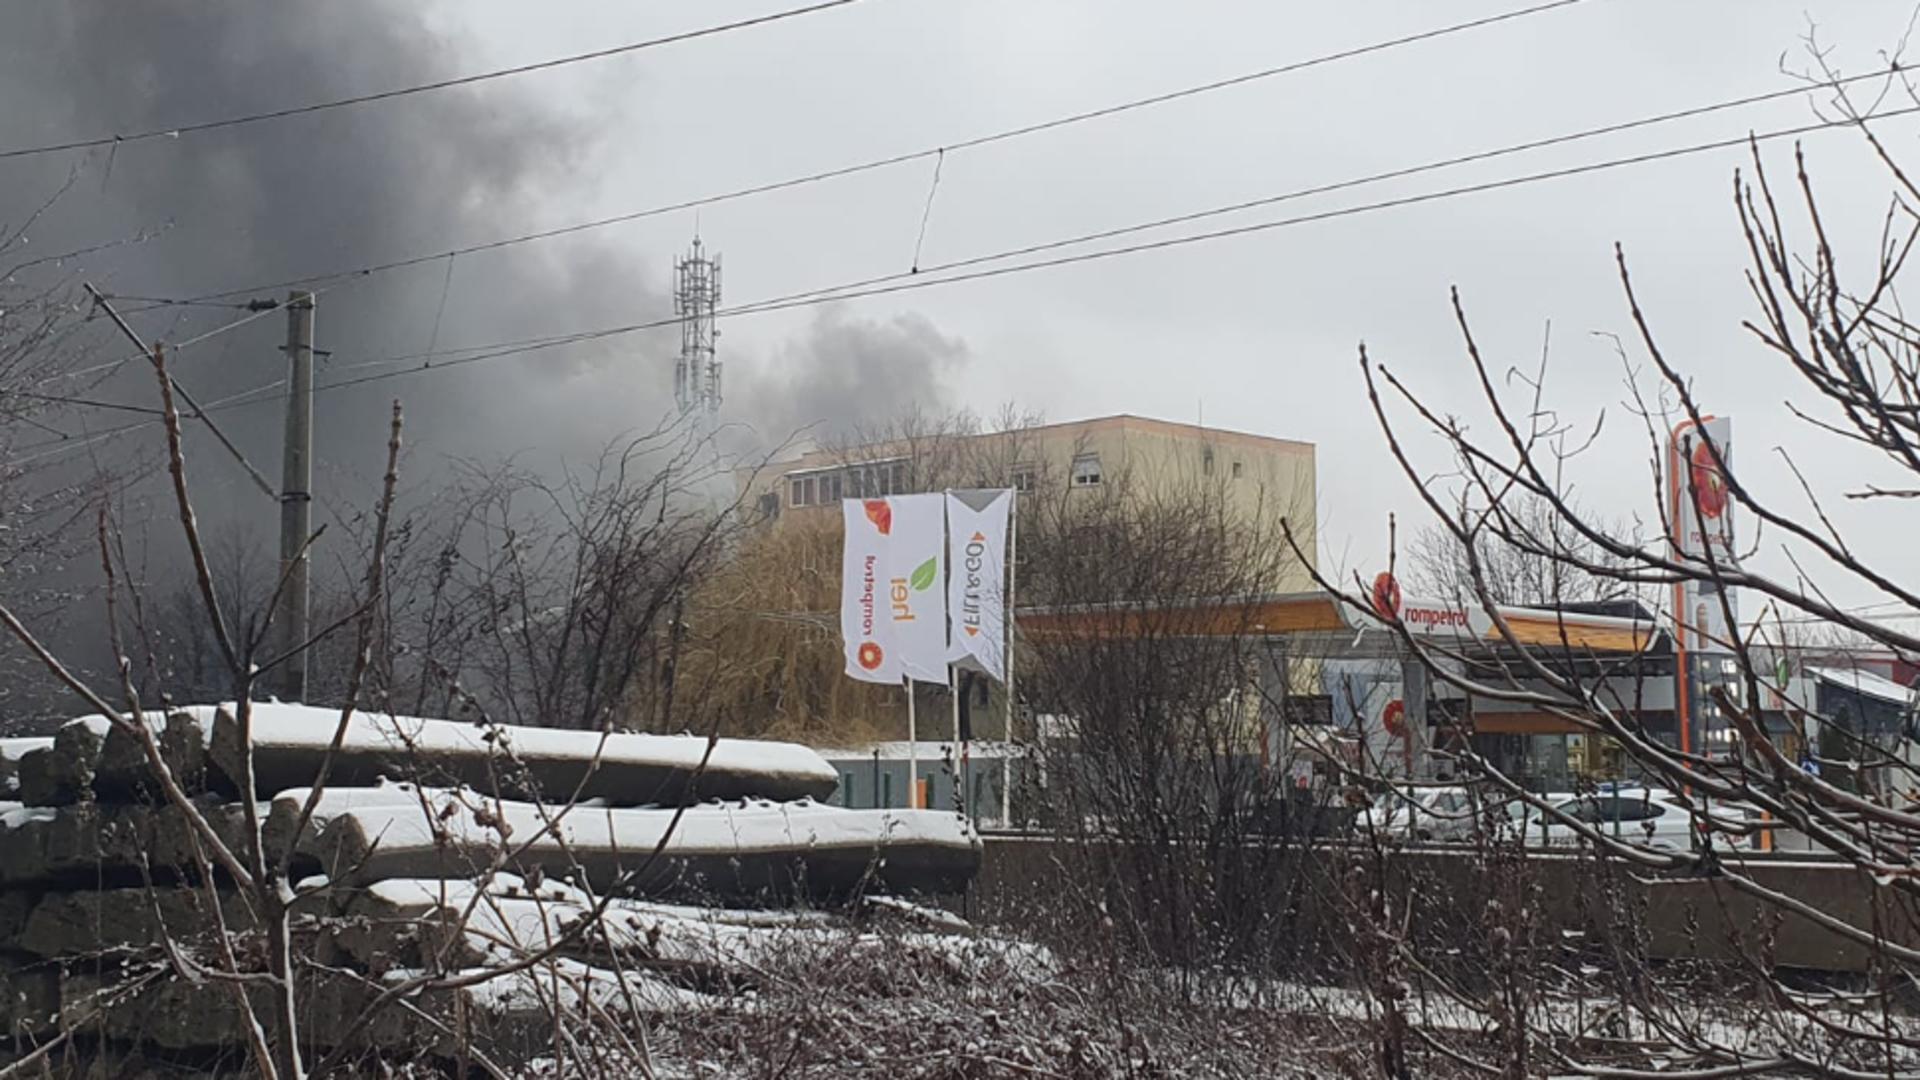 Incendiu violent la un depozit de lângă București: 40 de oameni evacuați: 4 victime - Degajări mari de fum - Mesaj RO-Alert - VIDEO